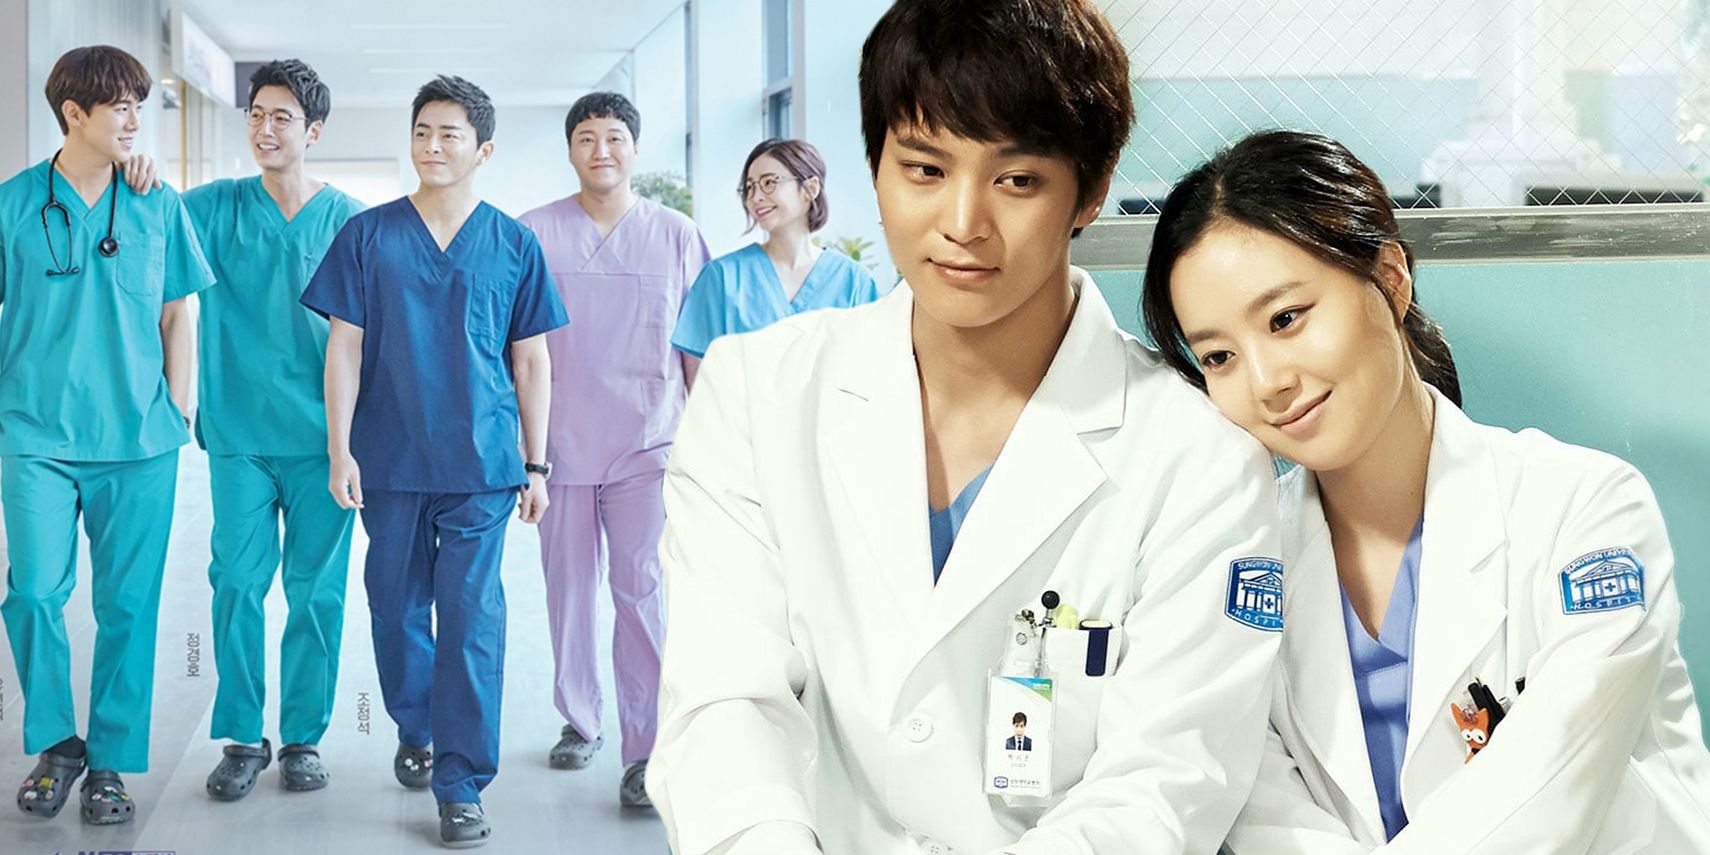 Personajes de la lista de reproducción del hospital caminando por el pasillo, Good Doctor's Si-On con una doctora